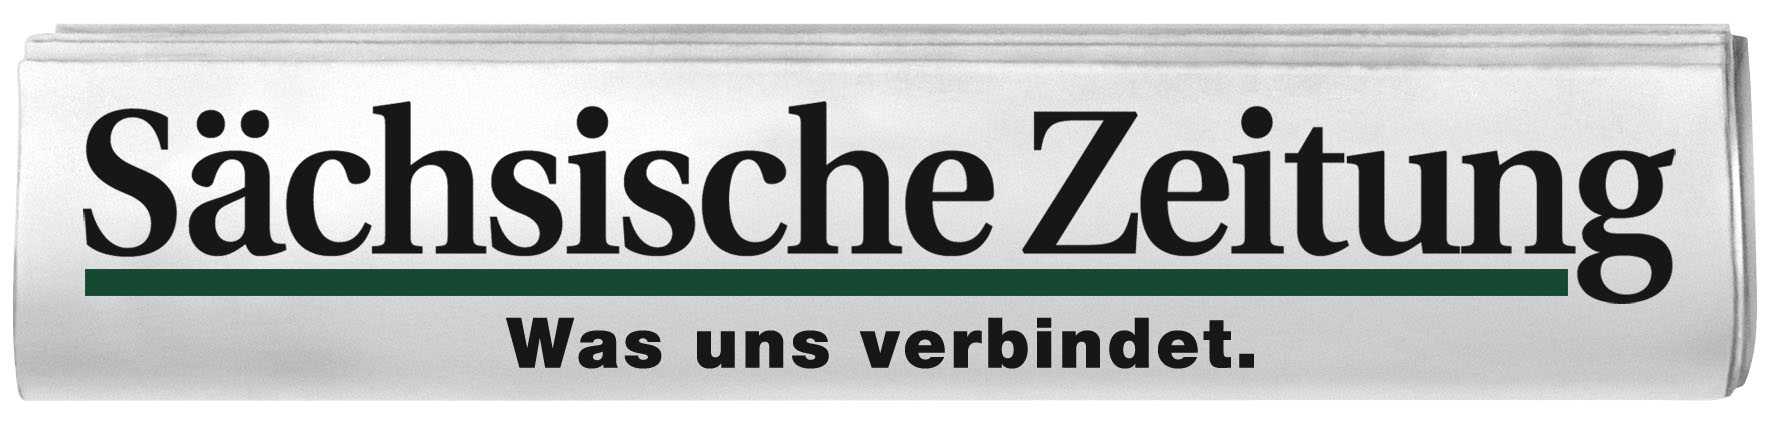 Schsische Zeitung GmbH  